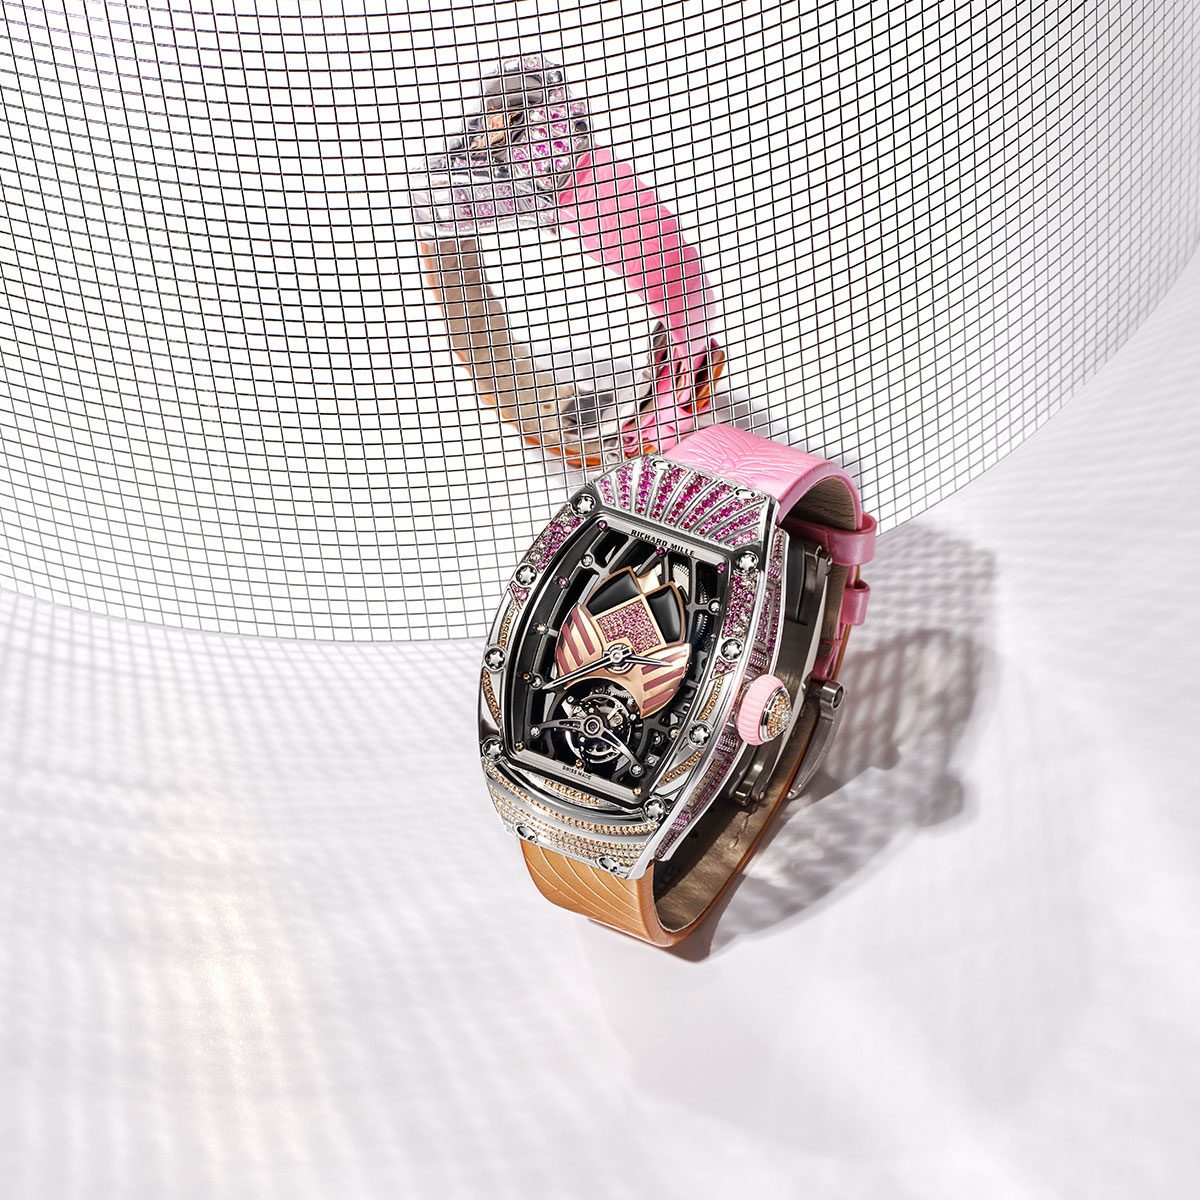 Đồng hồ RM 71-02 Automatic Tourbillon Talisman: Chiếc bùa may mắn sắc cầu vồng từ Richard Mille